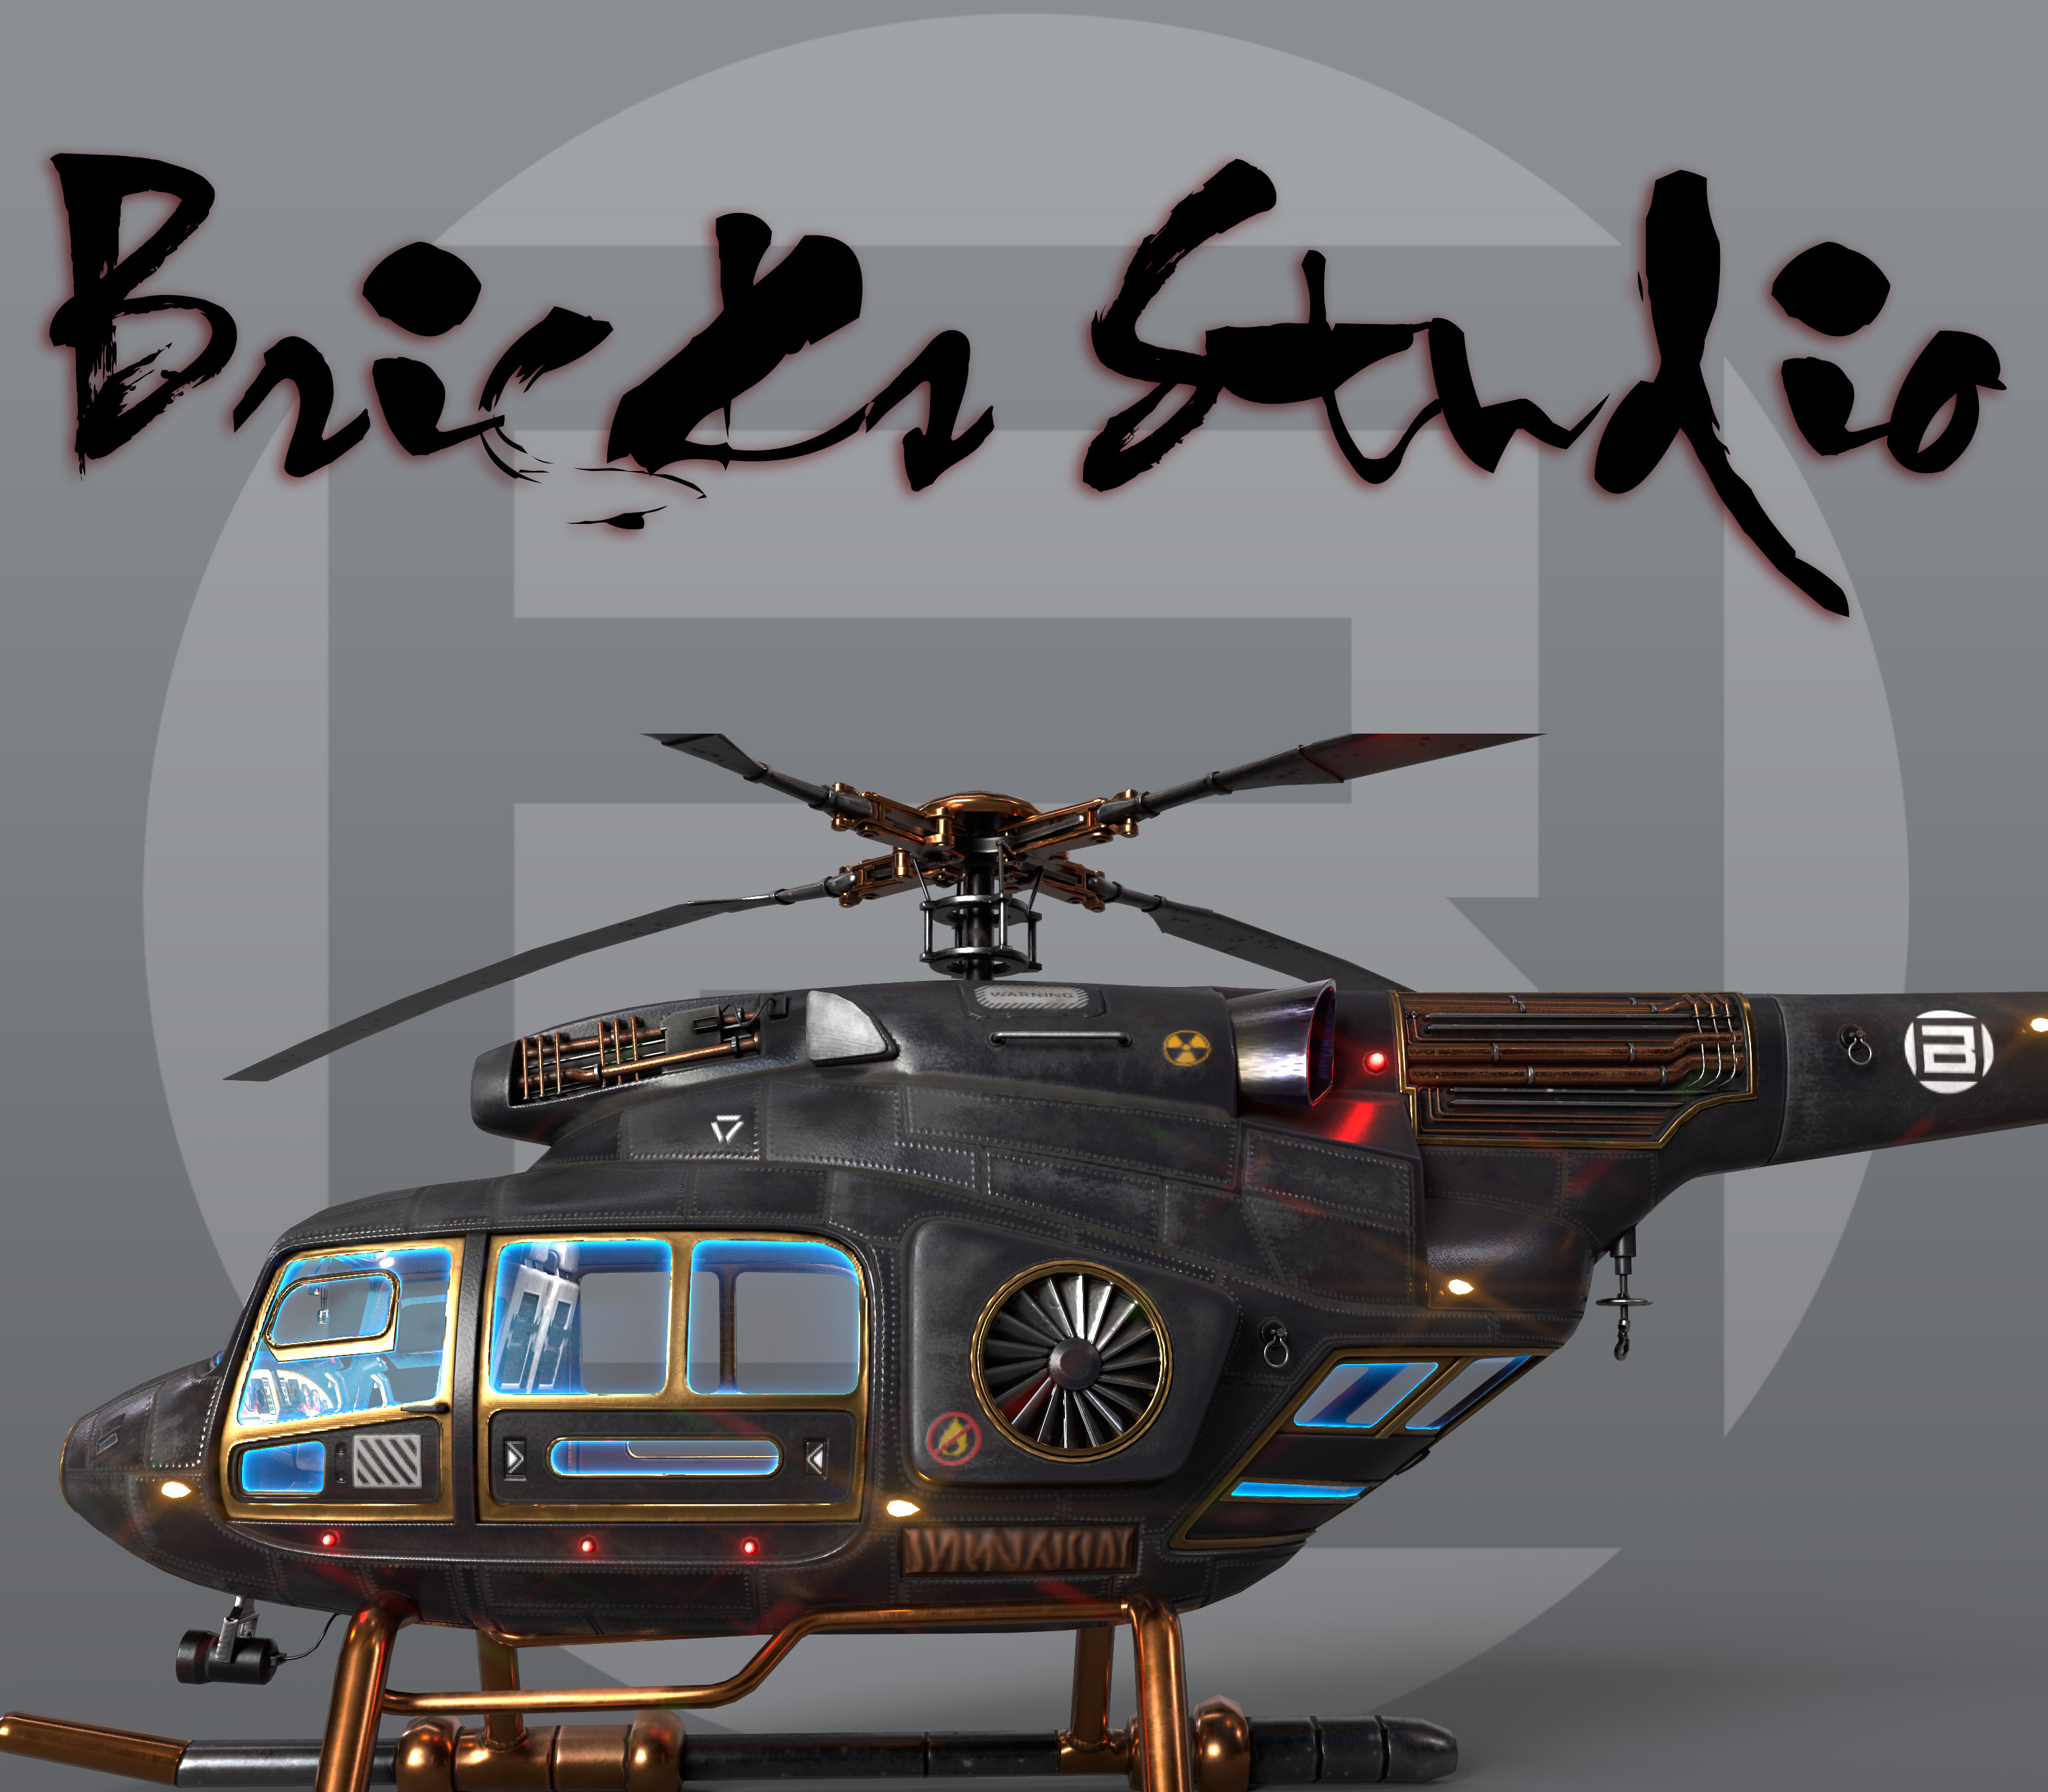 Steam Workshop::HelicopterSpawn